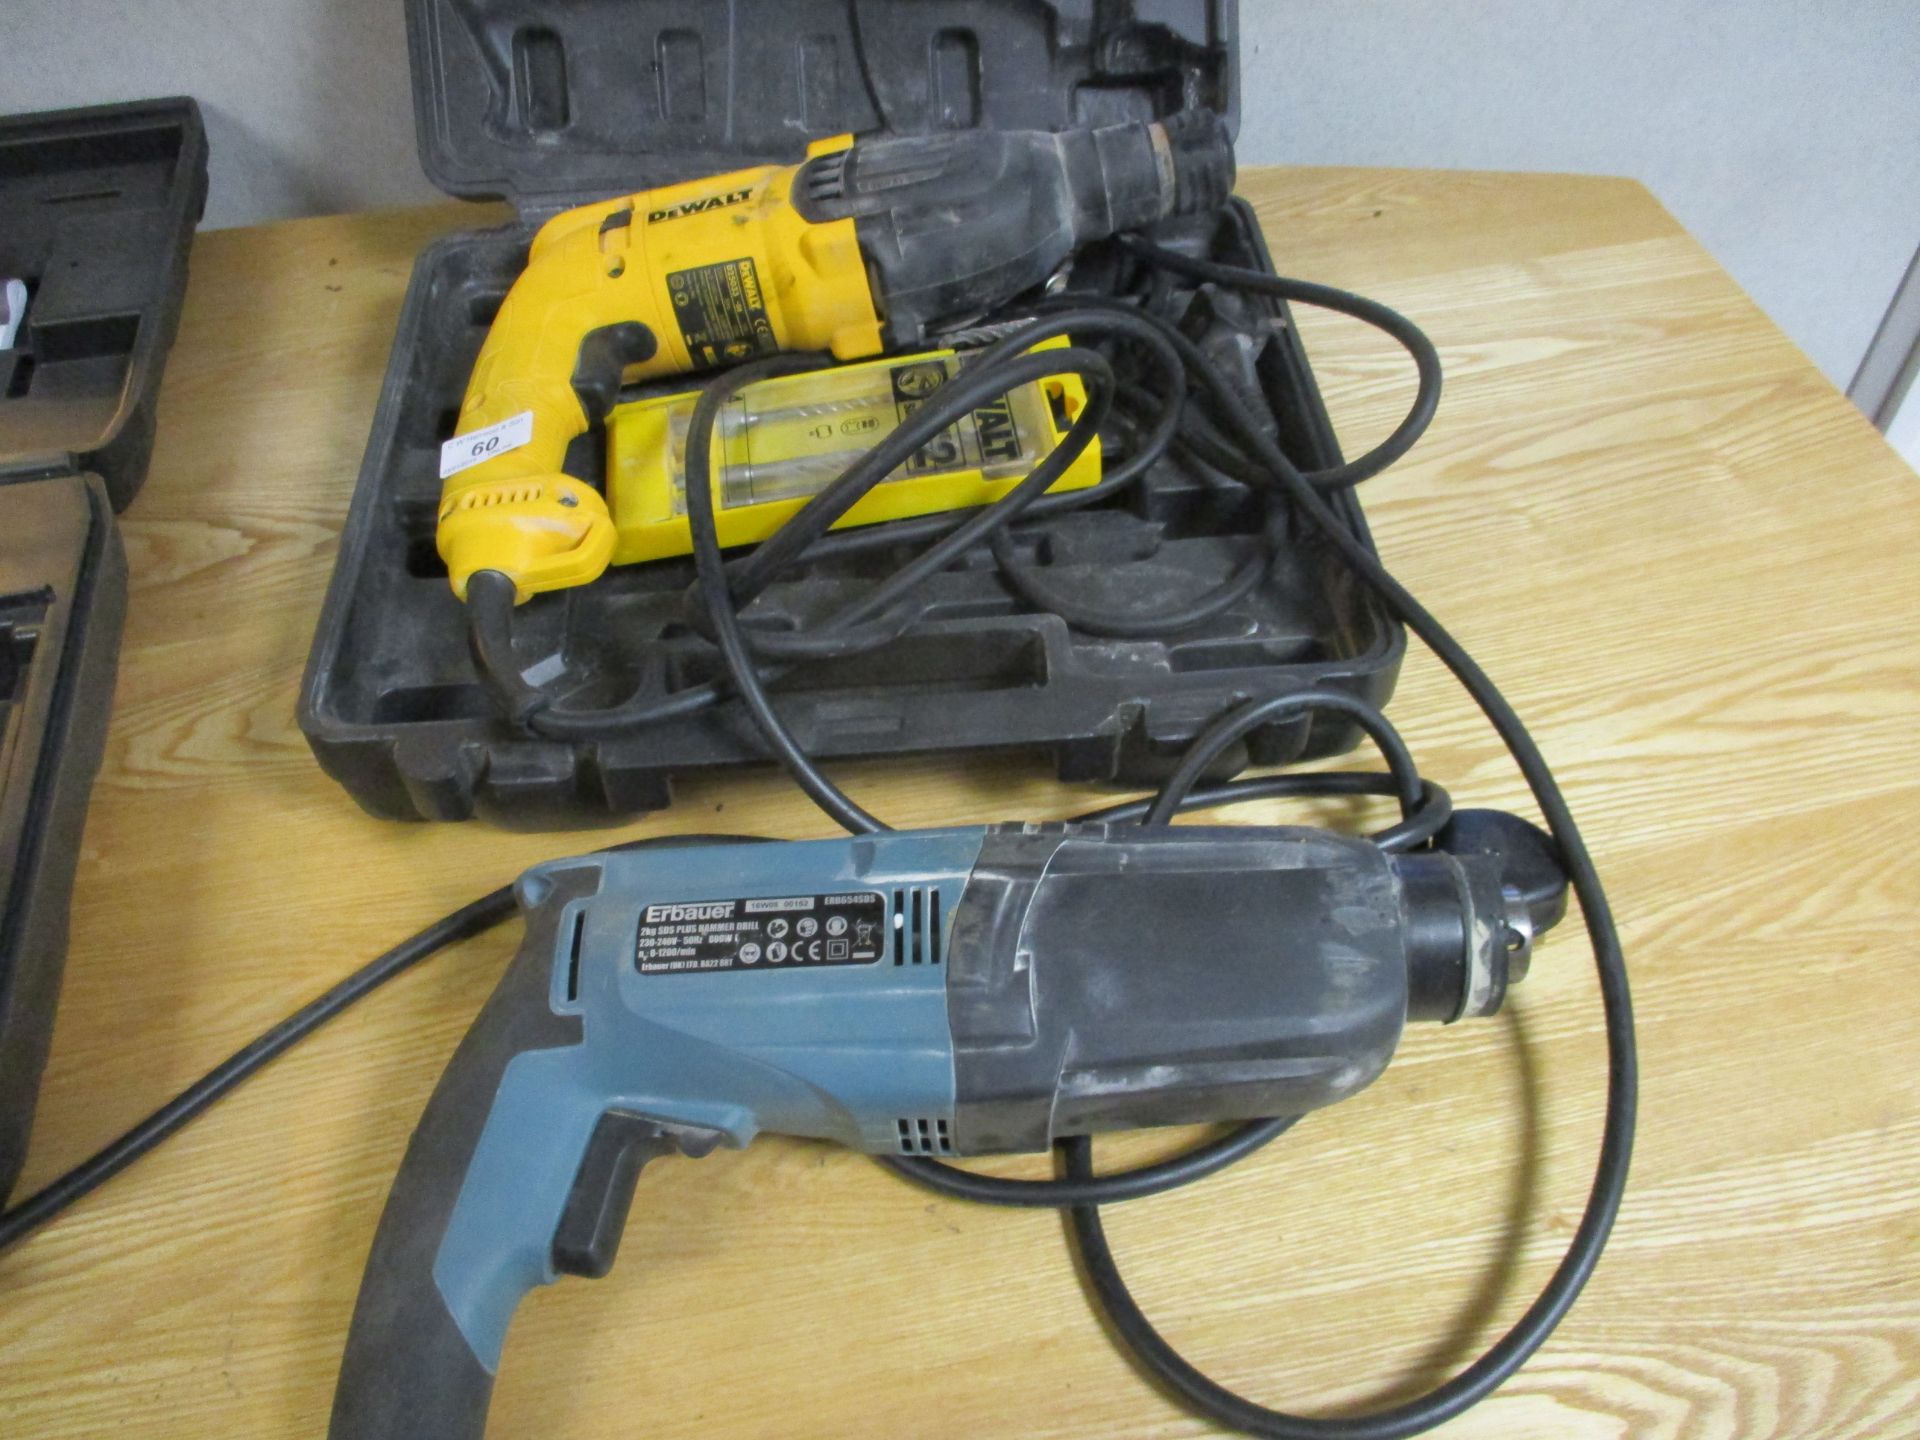 DeWalt D25033 240v hammer drill in case